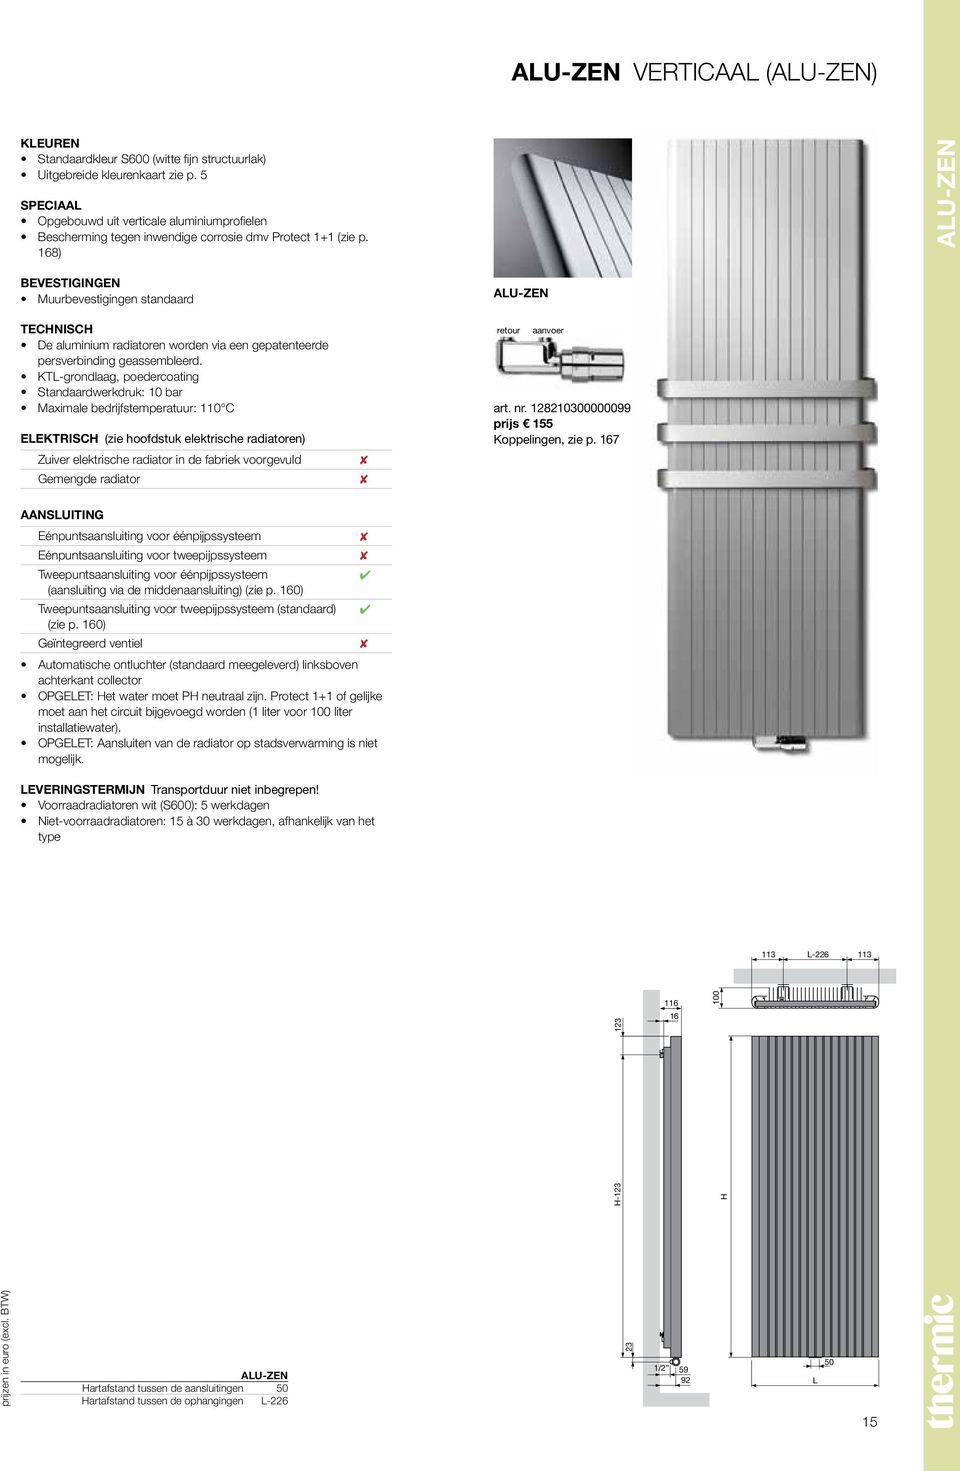 18) Alu-Zen BEVESTIGINGEN Muurbevestigingen standaard TECHNISCH De aluminium radiatoren worden via een gepatenteerde persverbinding geassembleerd.